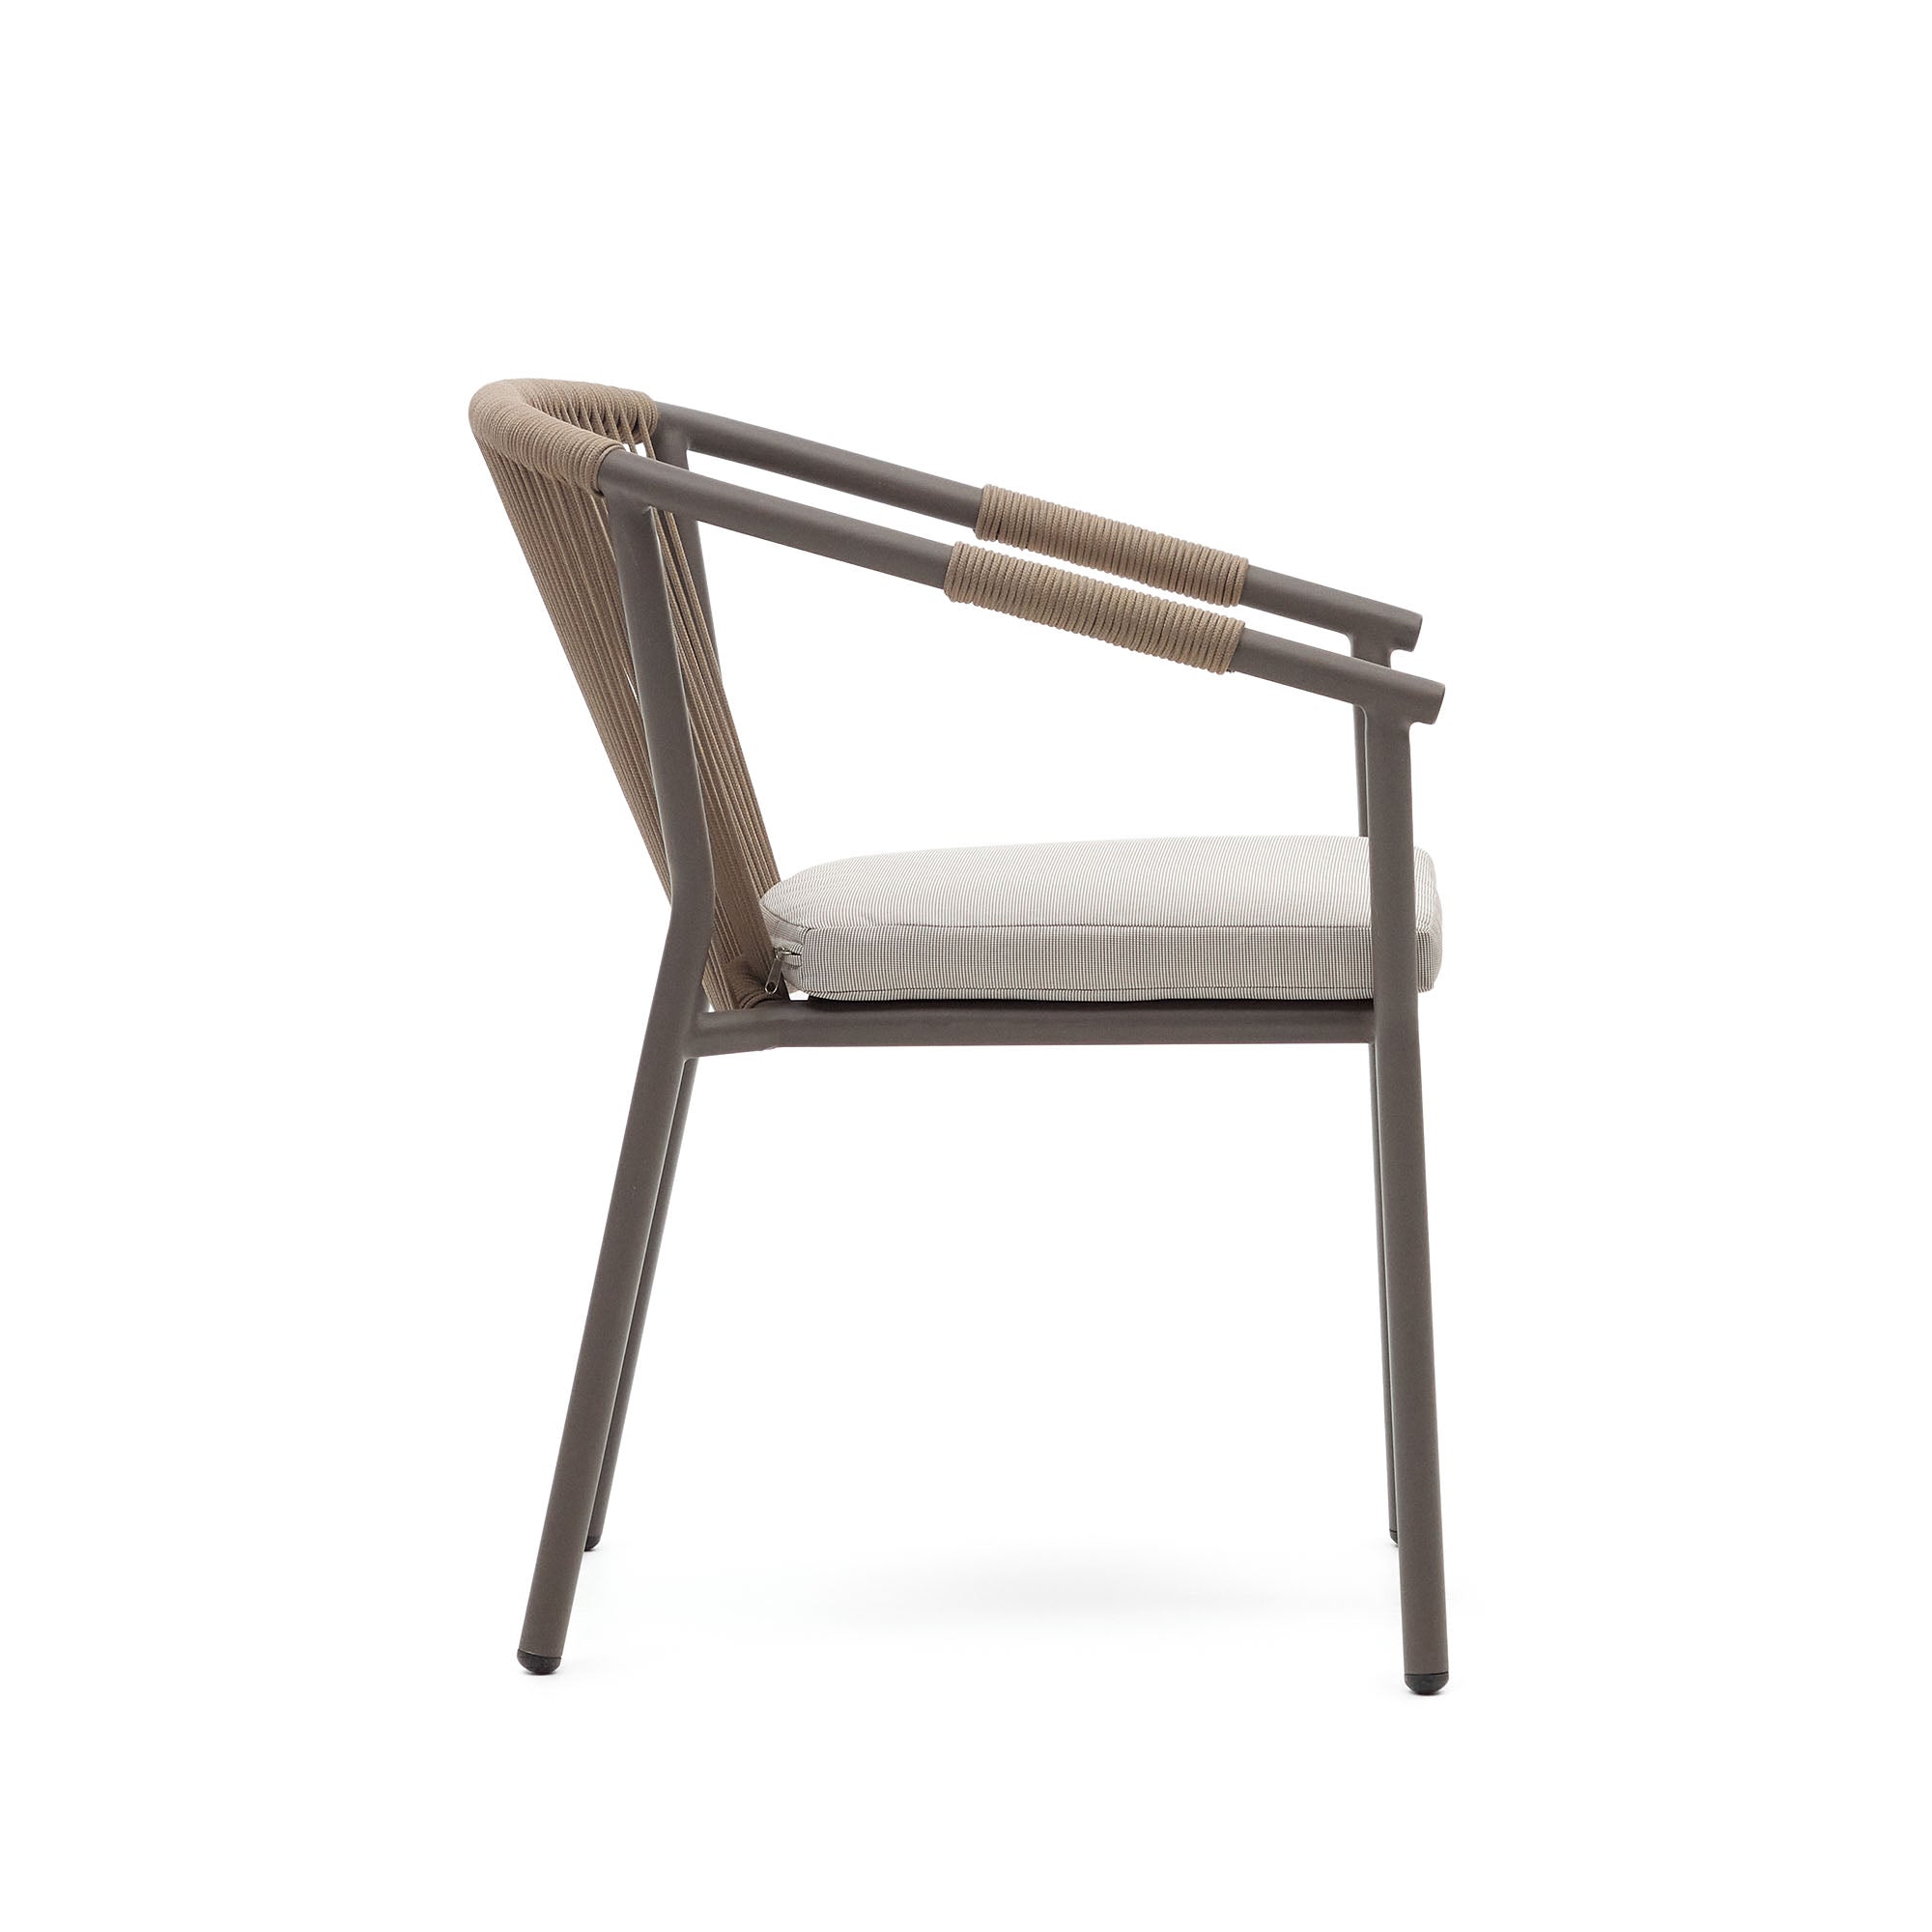 Xelida egymásba rakható kerti szék alumíniumból és barna zsinórból